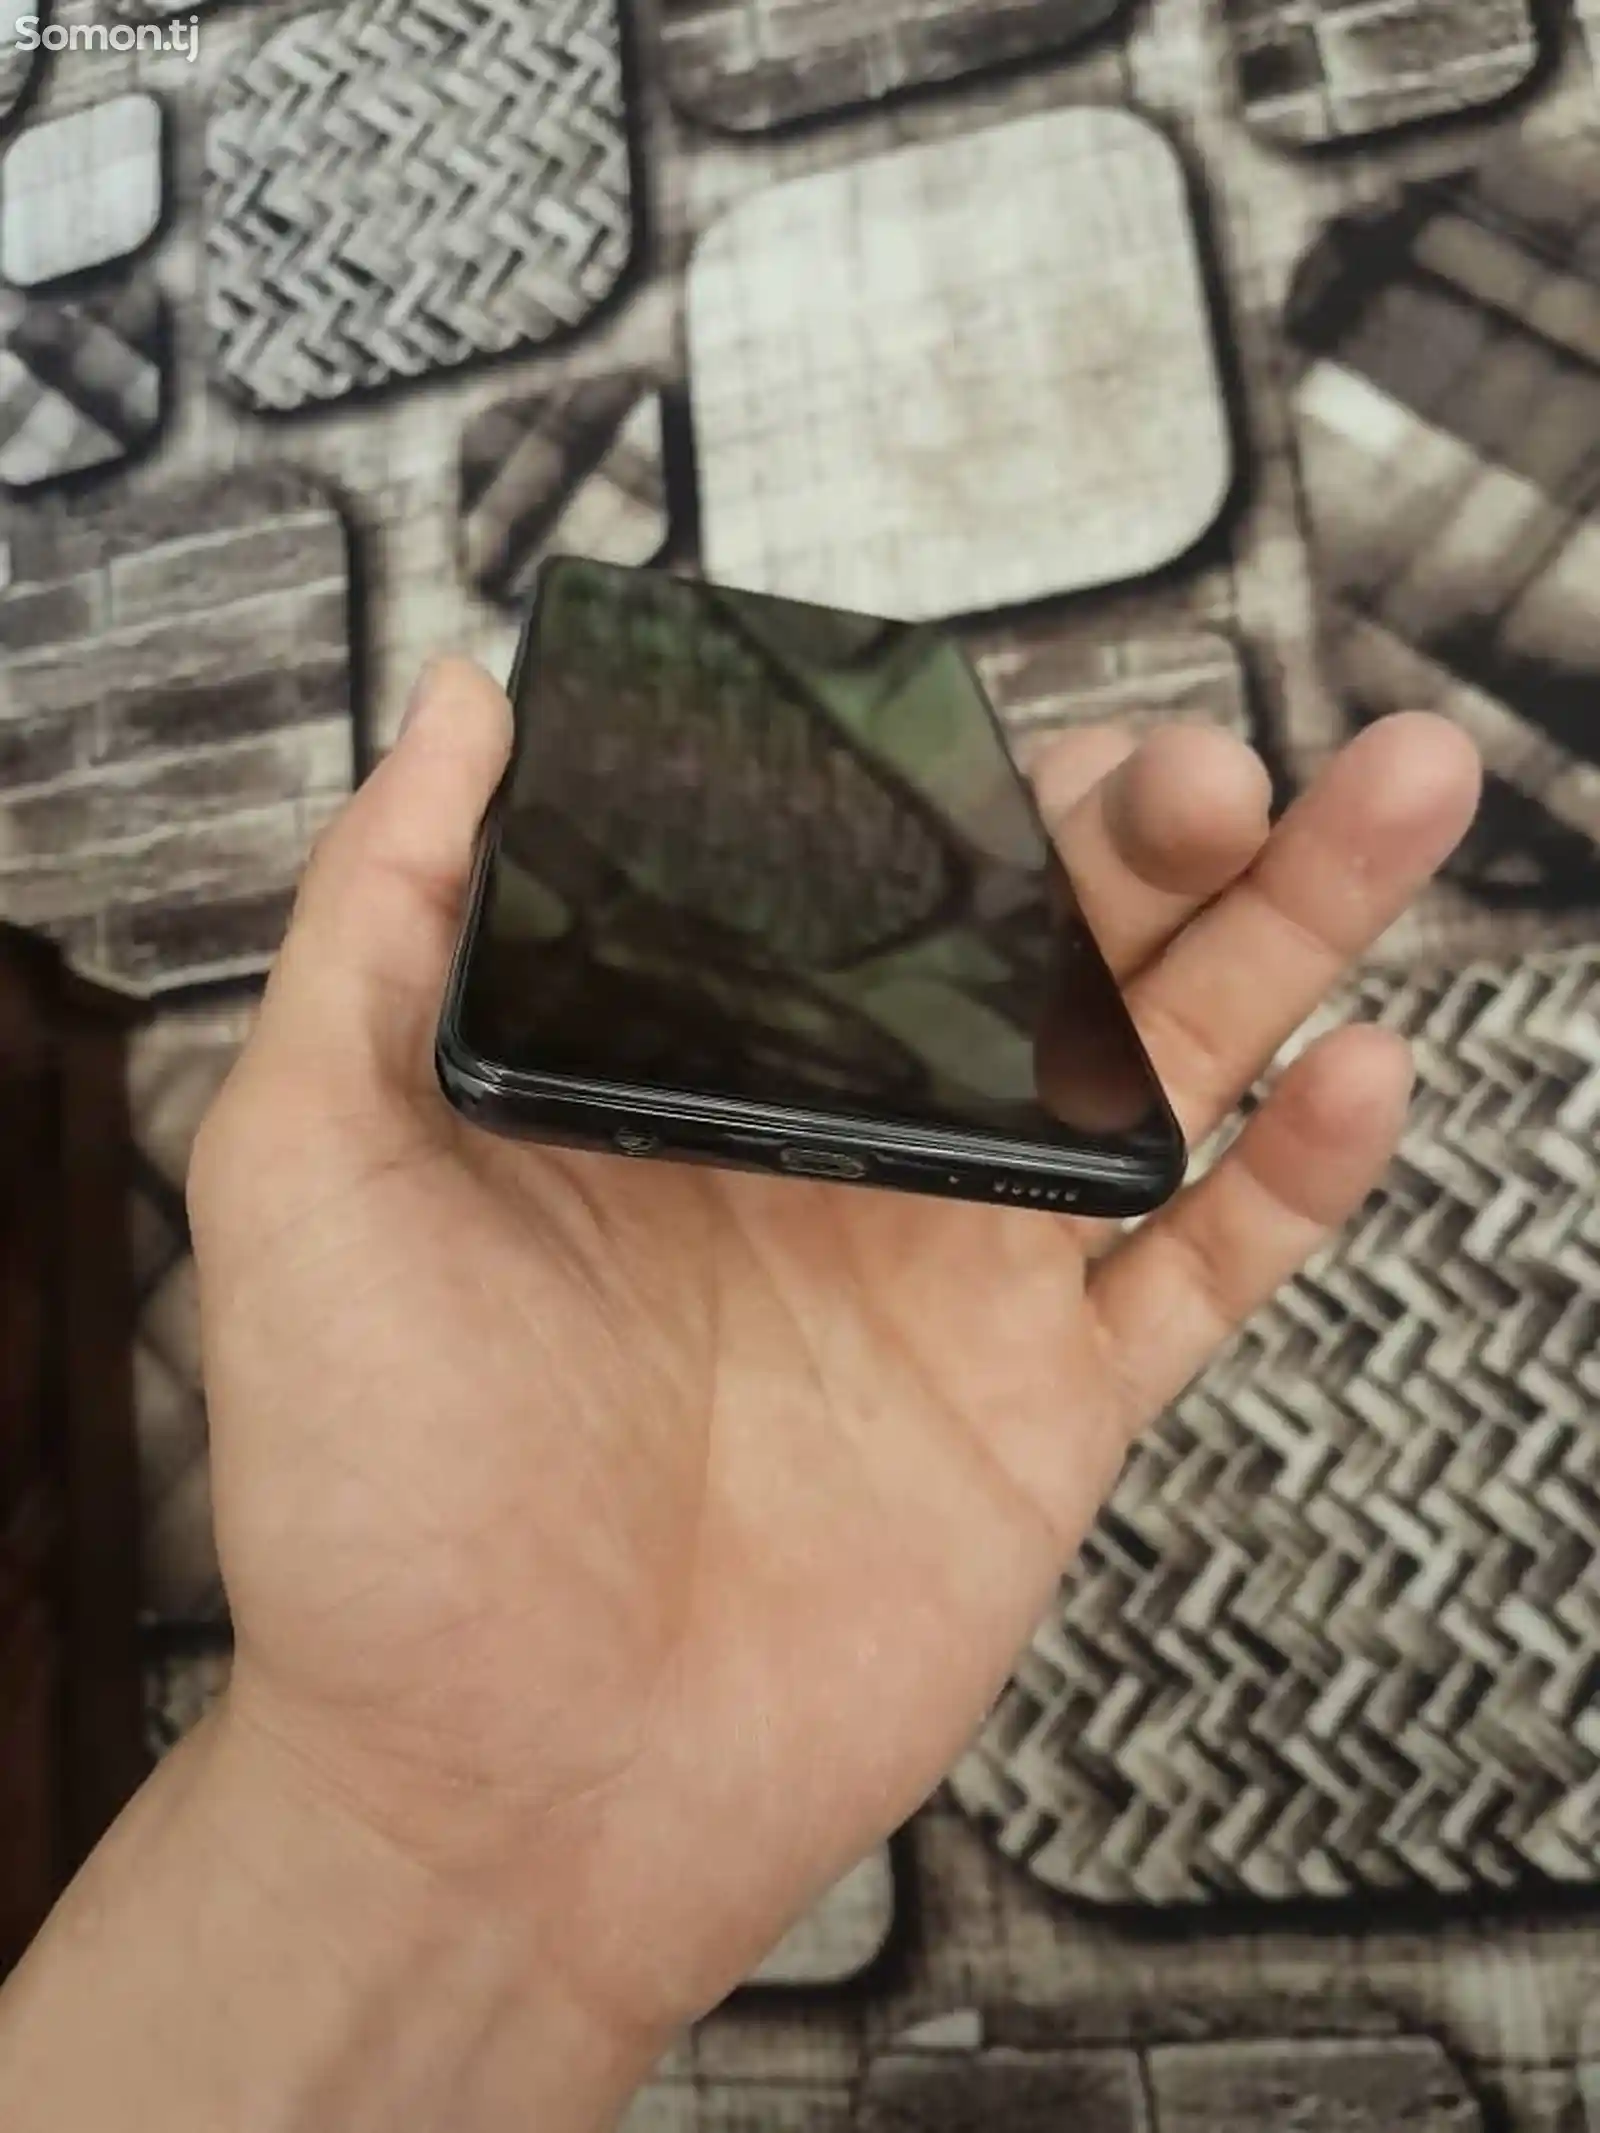 Samsung Galaxy A51-7